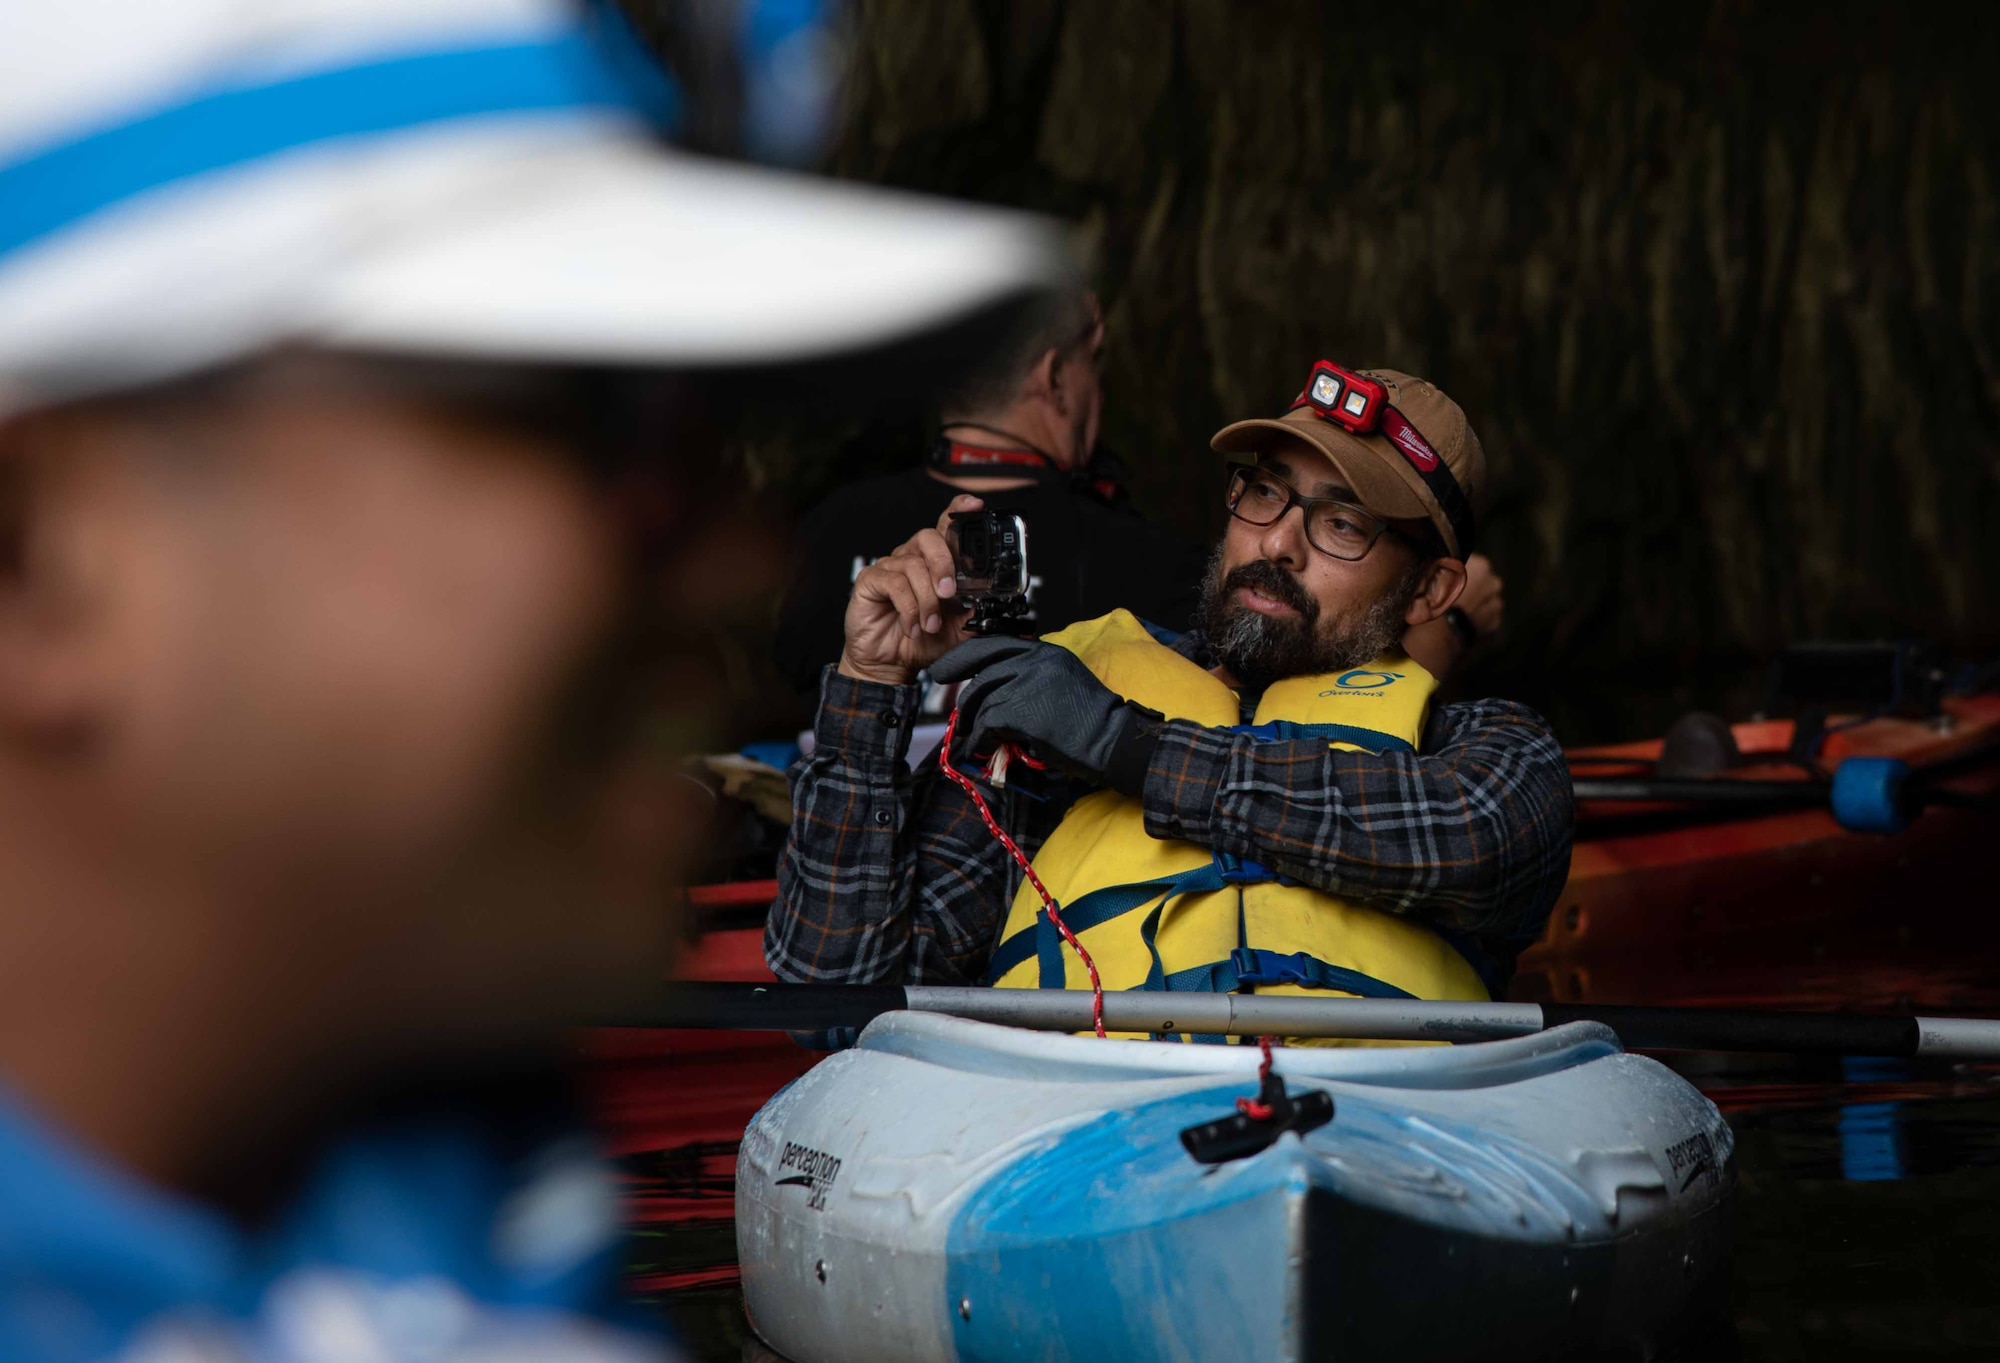 Man on kayak takes photo with gopro